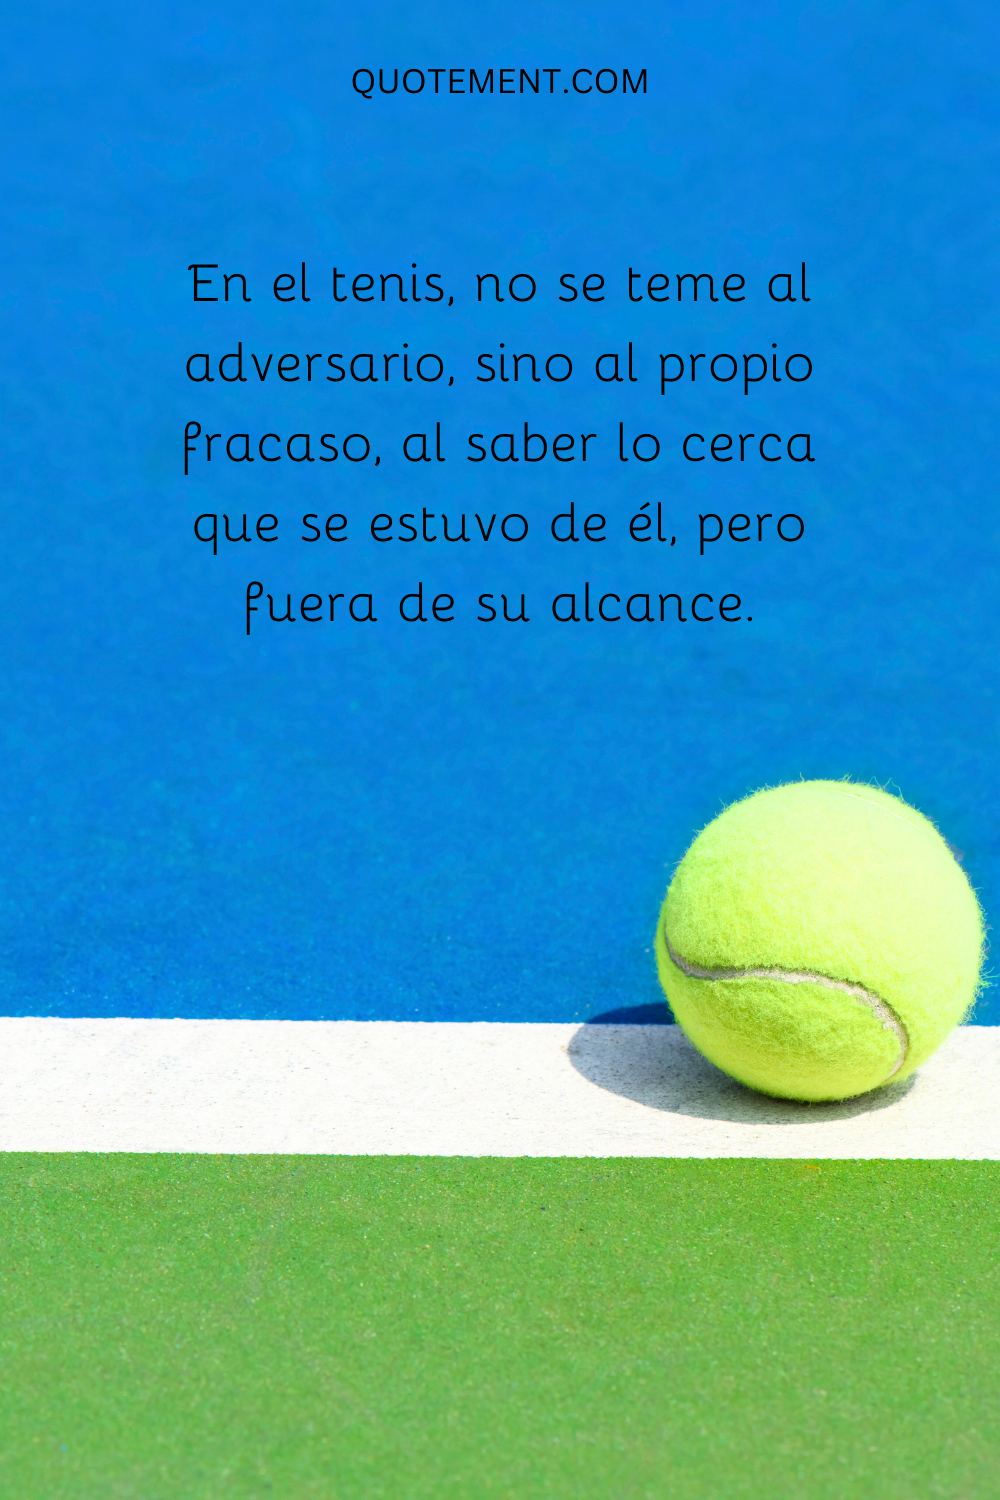 En el tenis, no se teme al adversario, sino al propio fracaso, al saber lo cerca que se estuvo de él, pero fuera de su alcance.